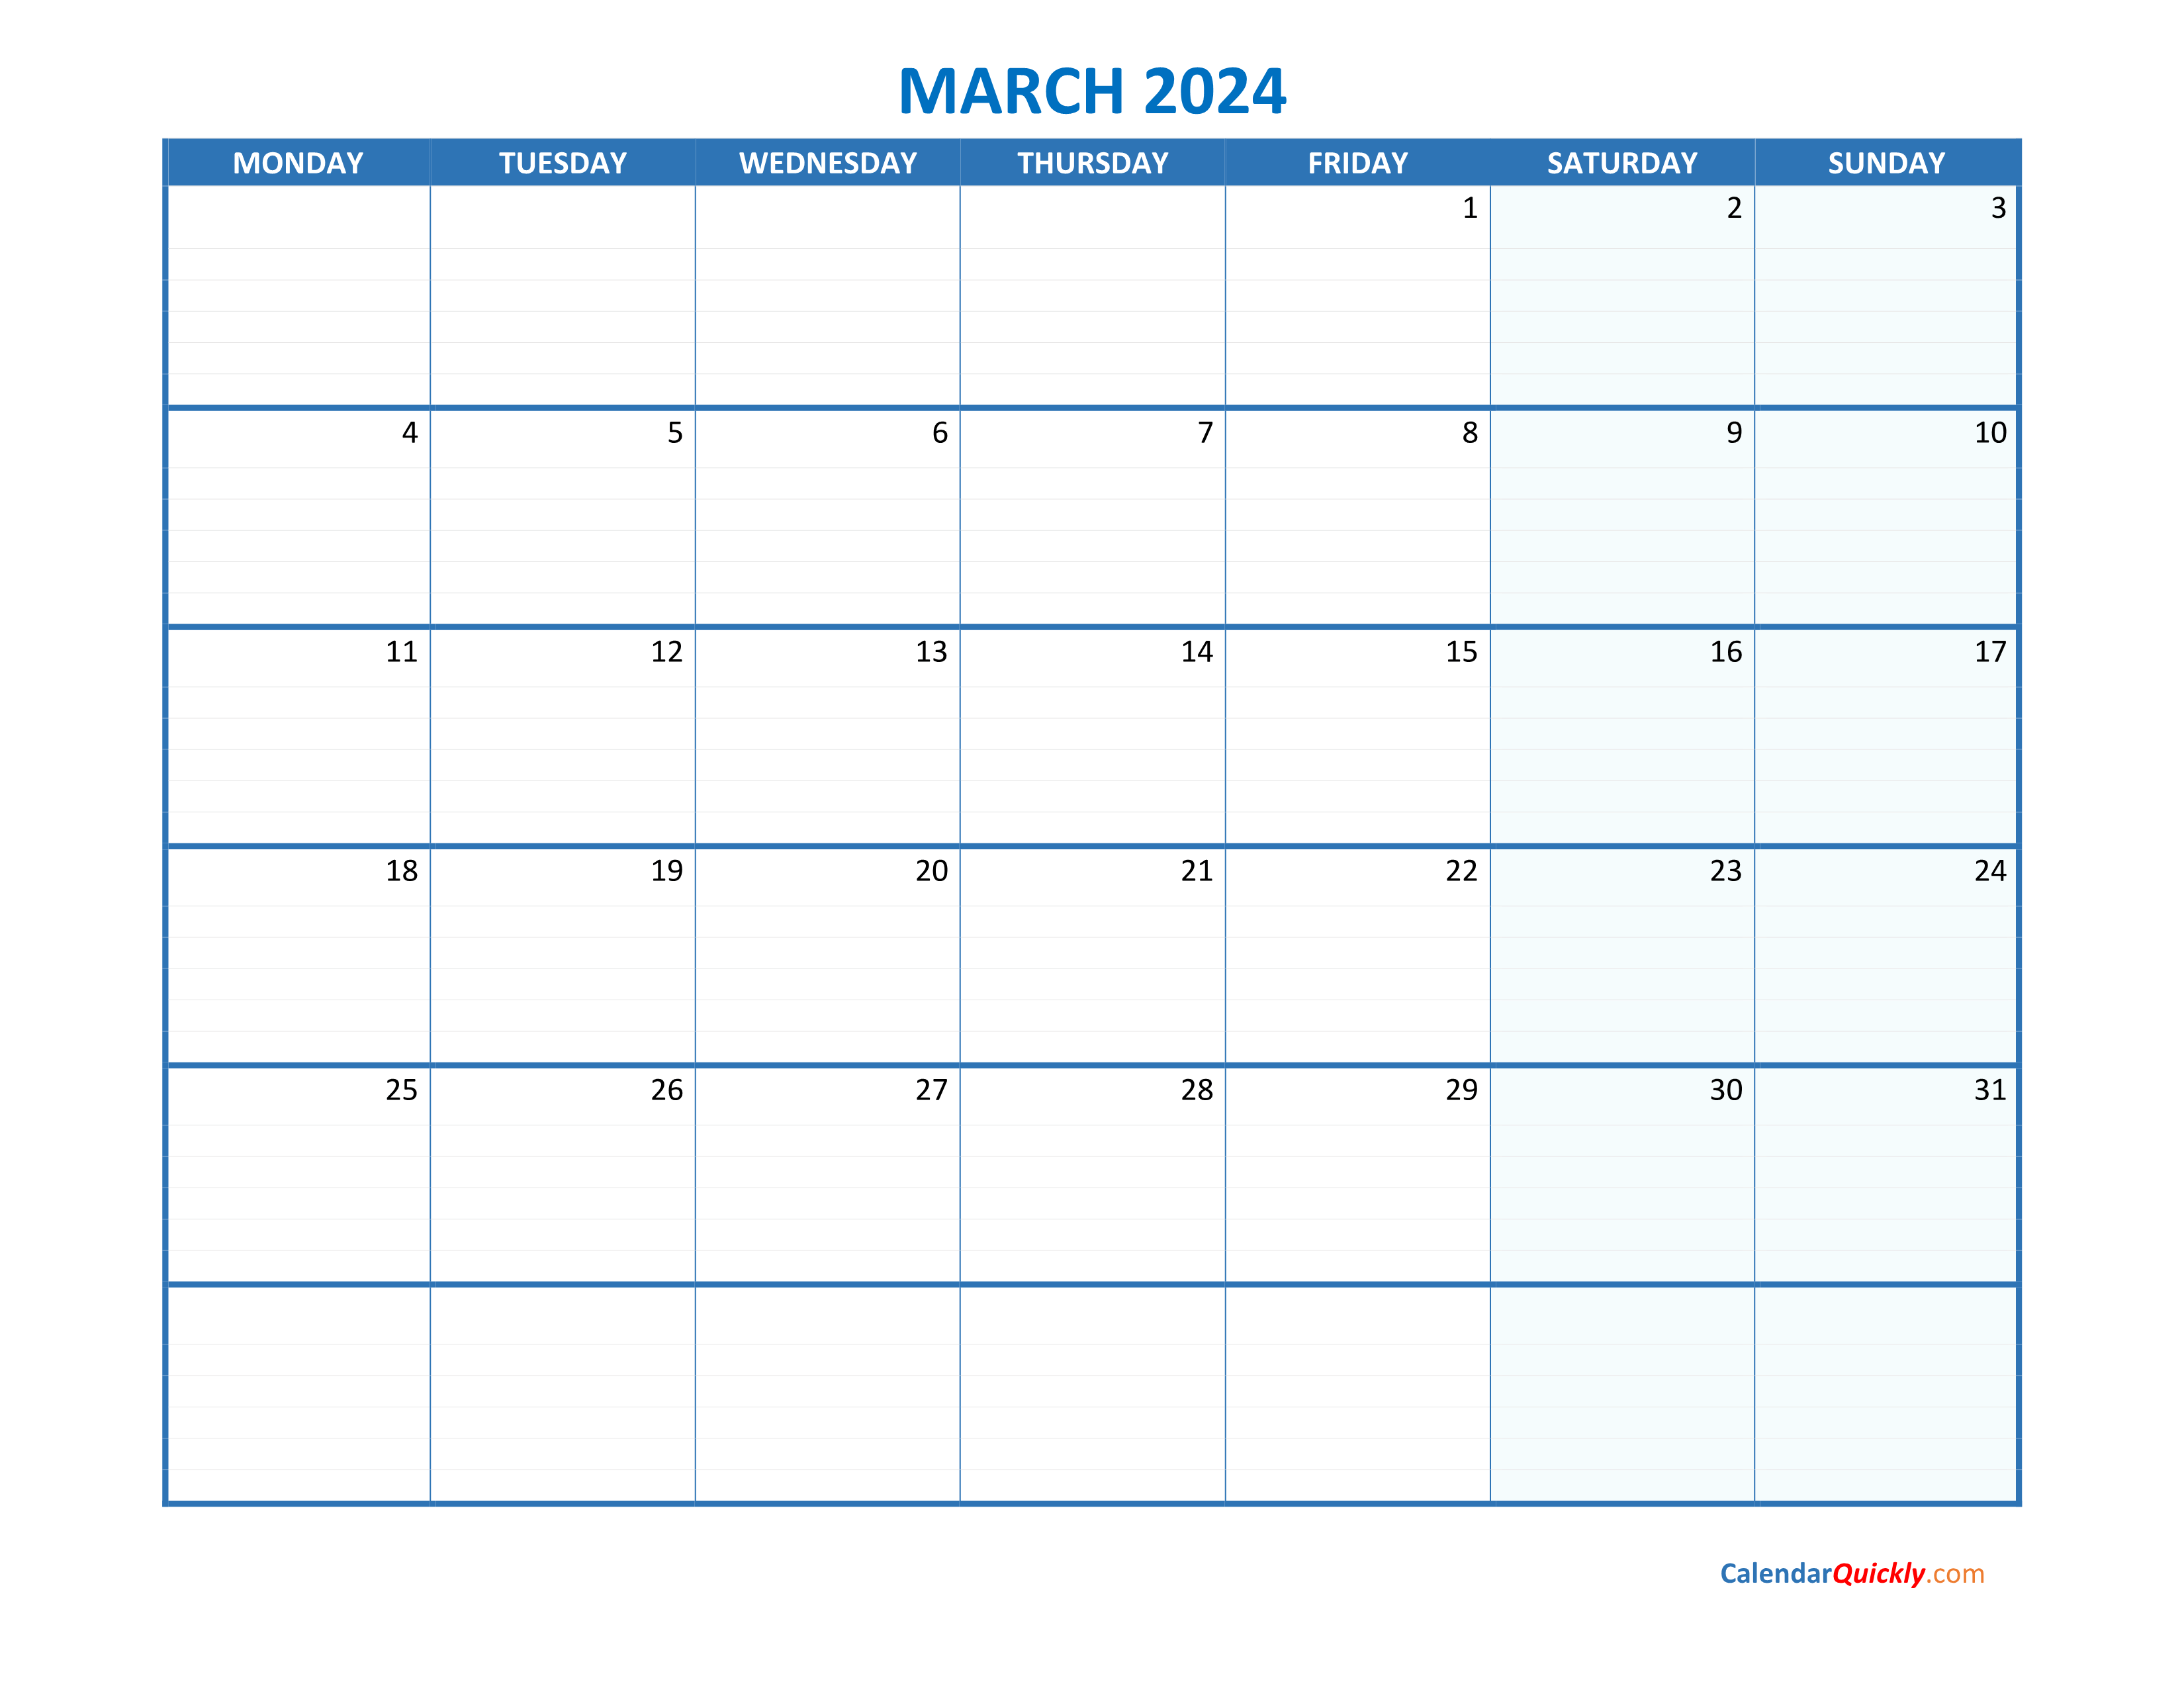 march-monday-2024-blank-calendar-calendar-quickly